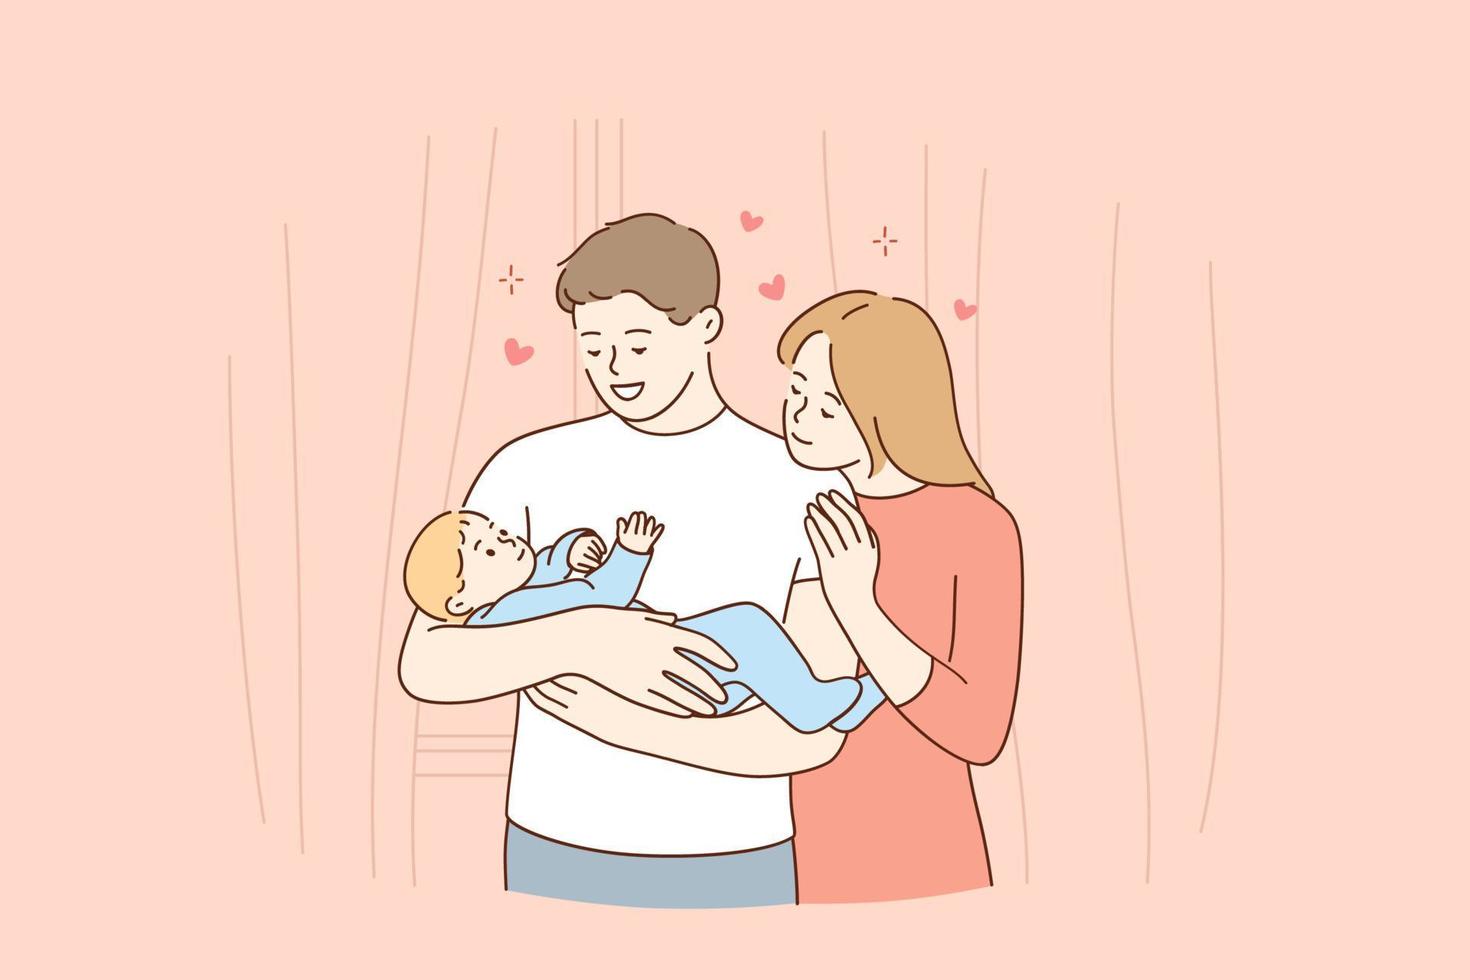 Lycklig familj och barndom begrepp. ung leende föräldrar mor och far familj stående och innehav små litet barn spädbarn nyfödd bebis i händer känsla kärlek och lycka vektor illustration